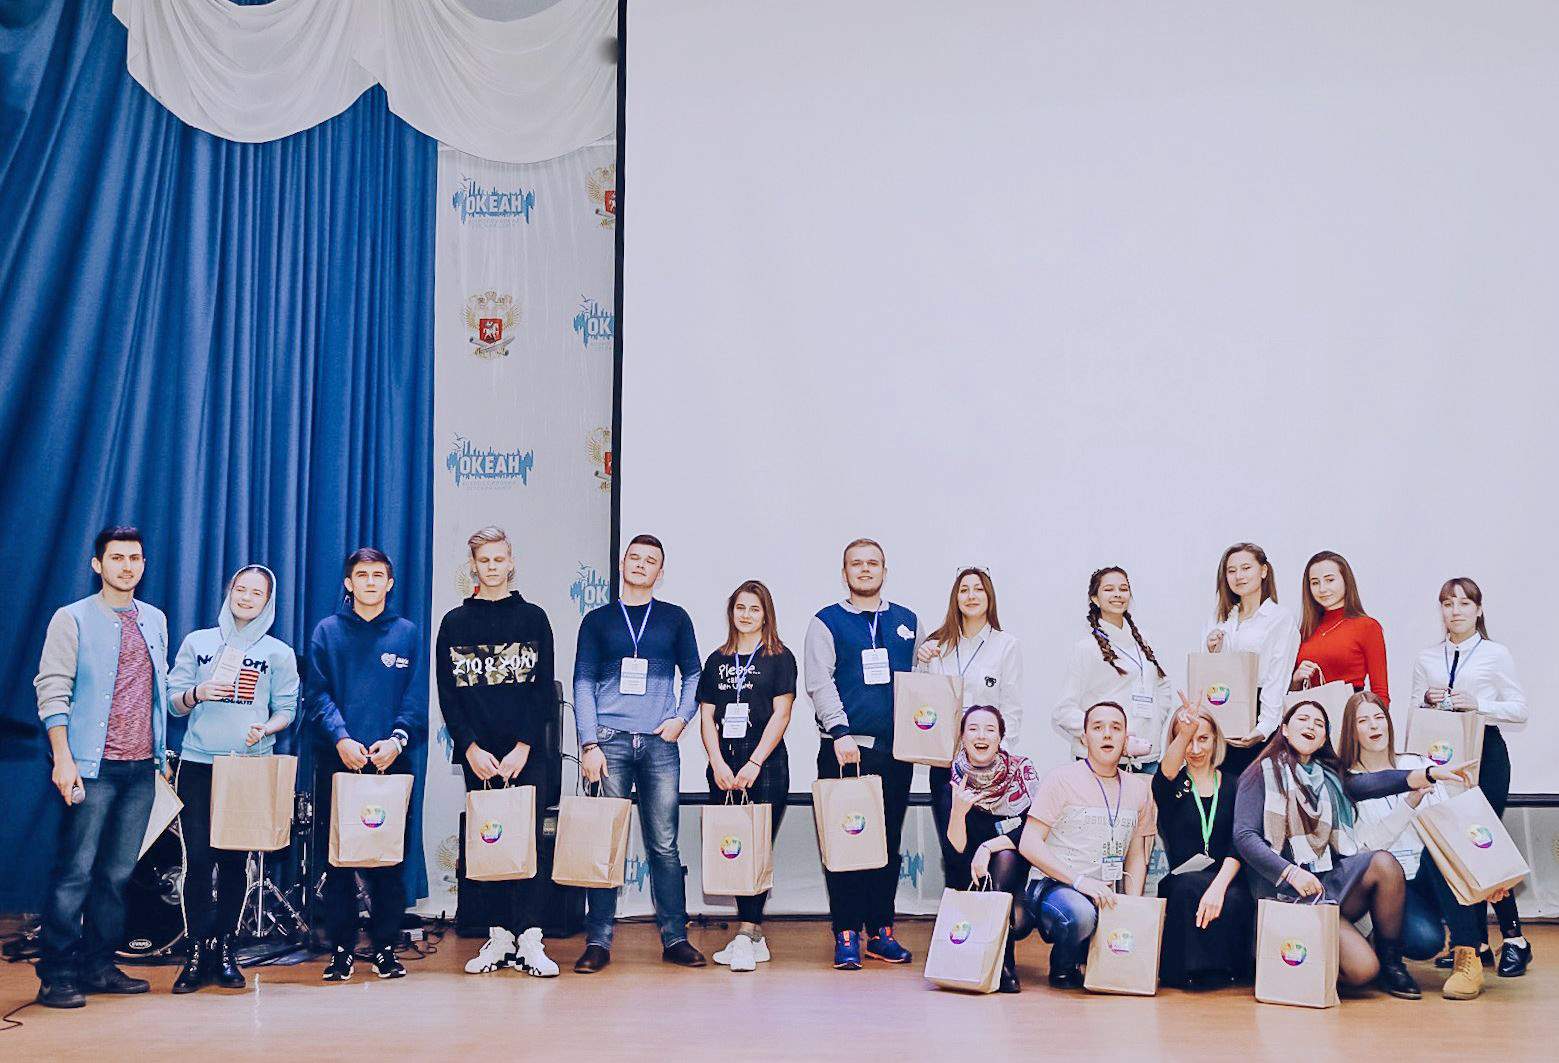 Педагог-организатор ВГУЭС вошла в ТОП-15 самых активных участников Форума молодёжи